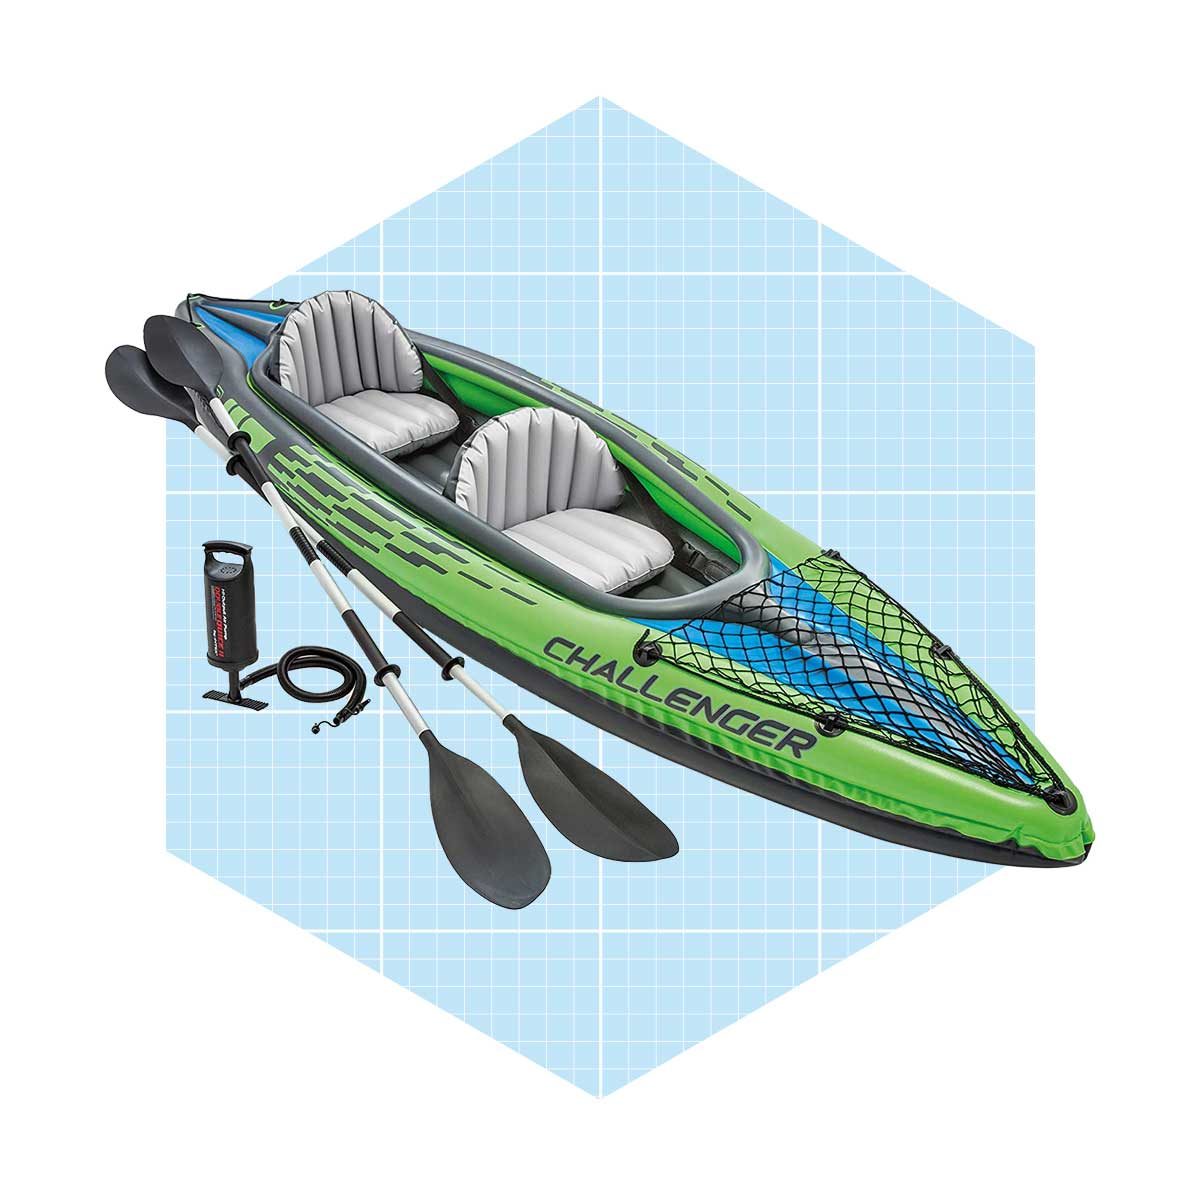 Intex Inflatable Kayaks Ecomm Amazon